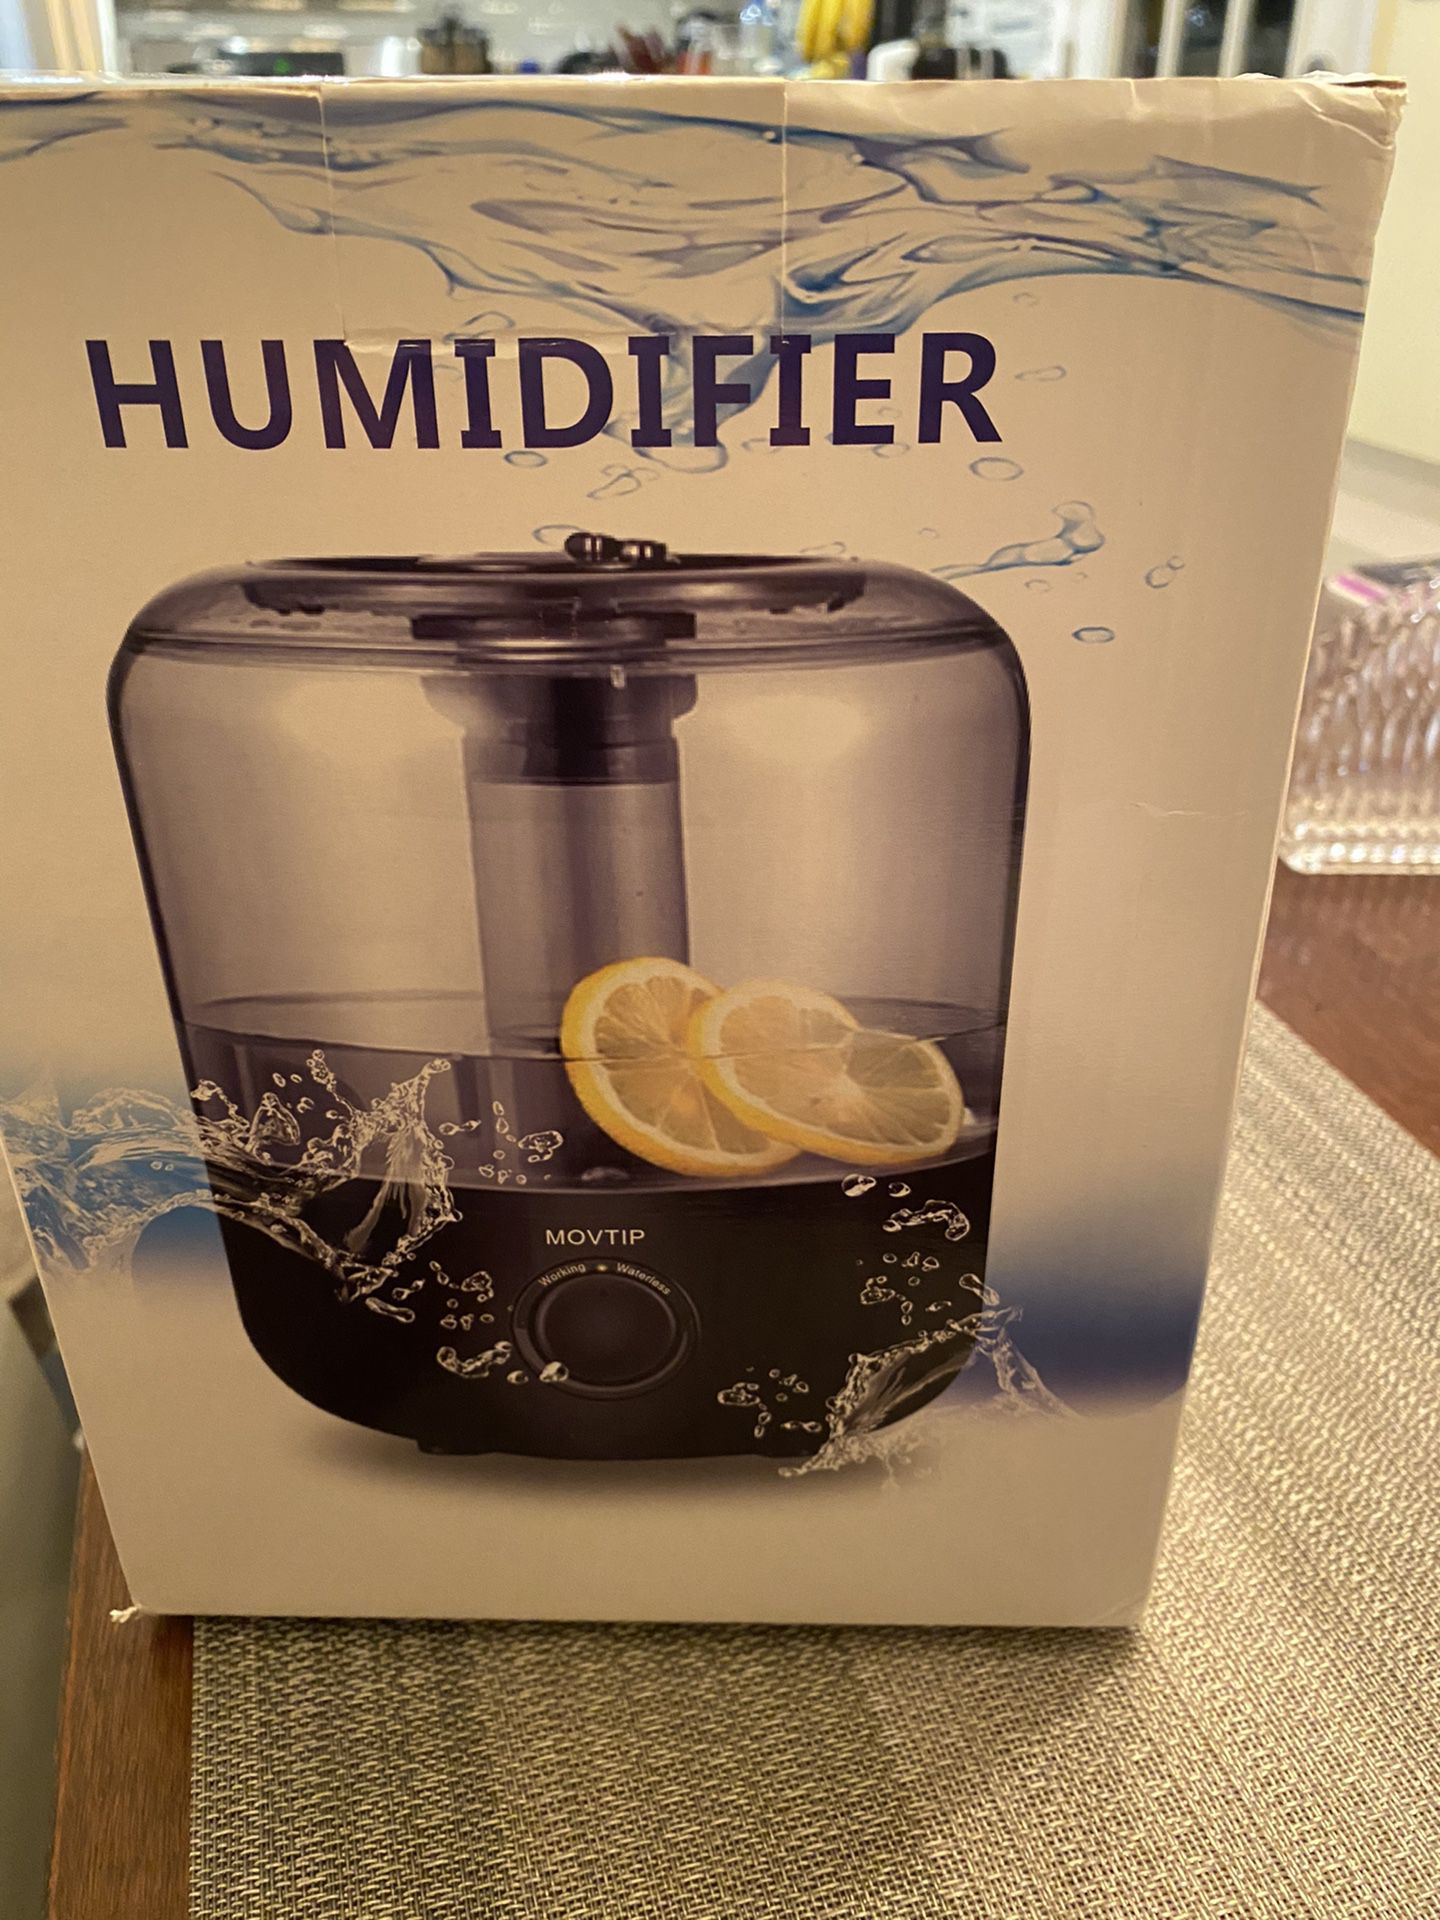 Humidifier medium/large